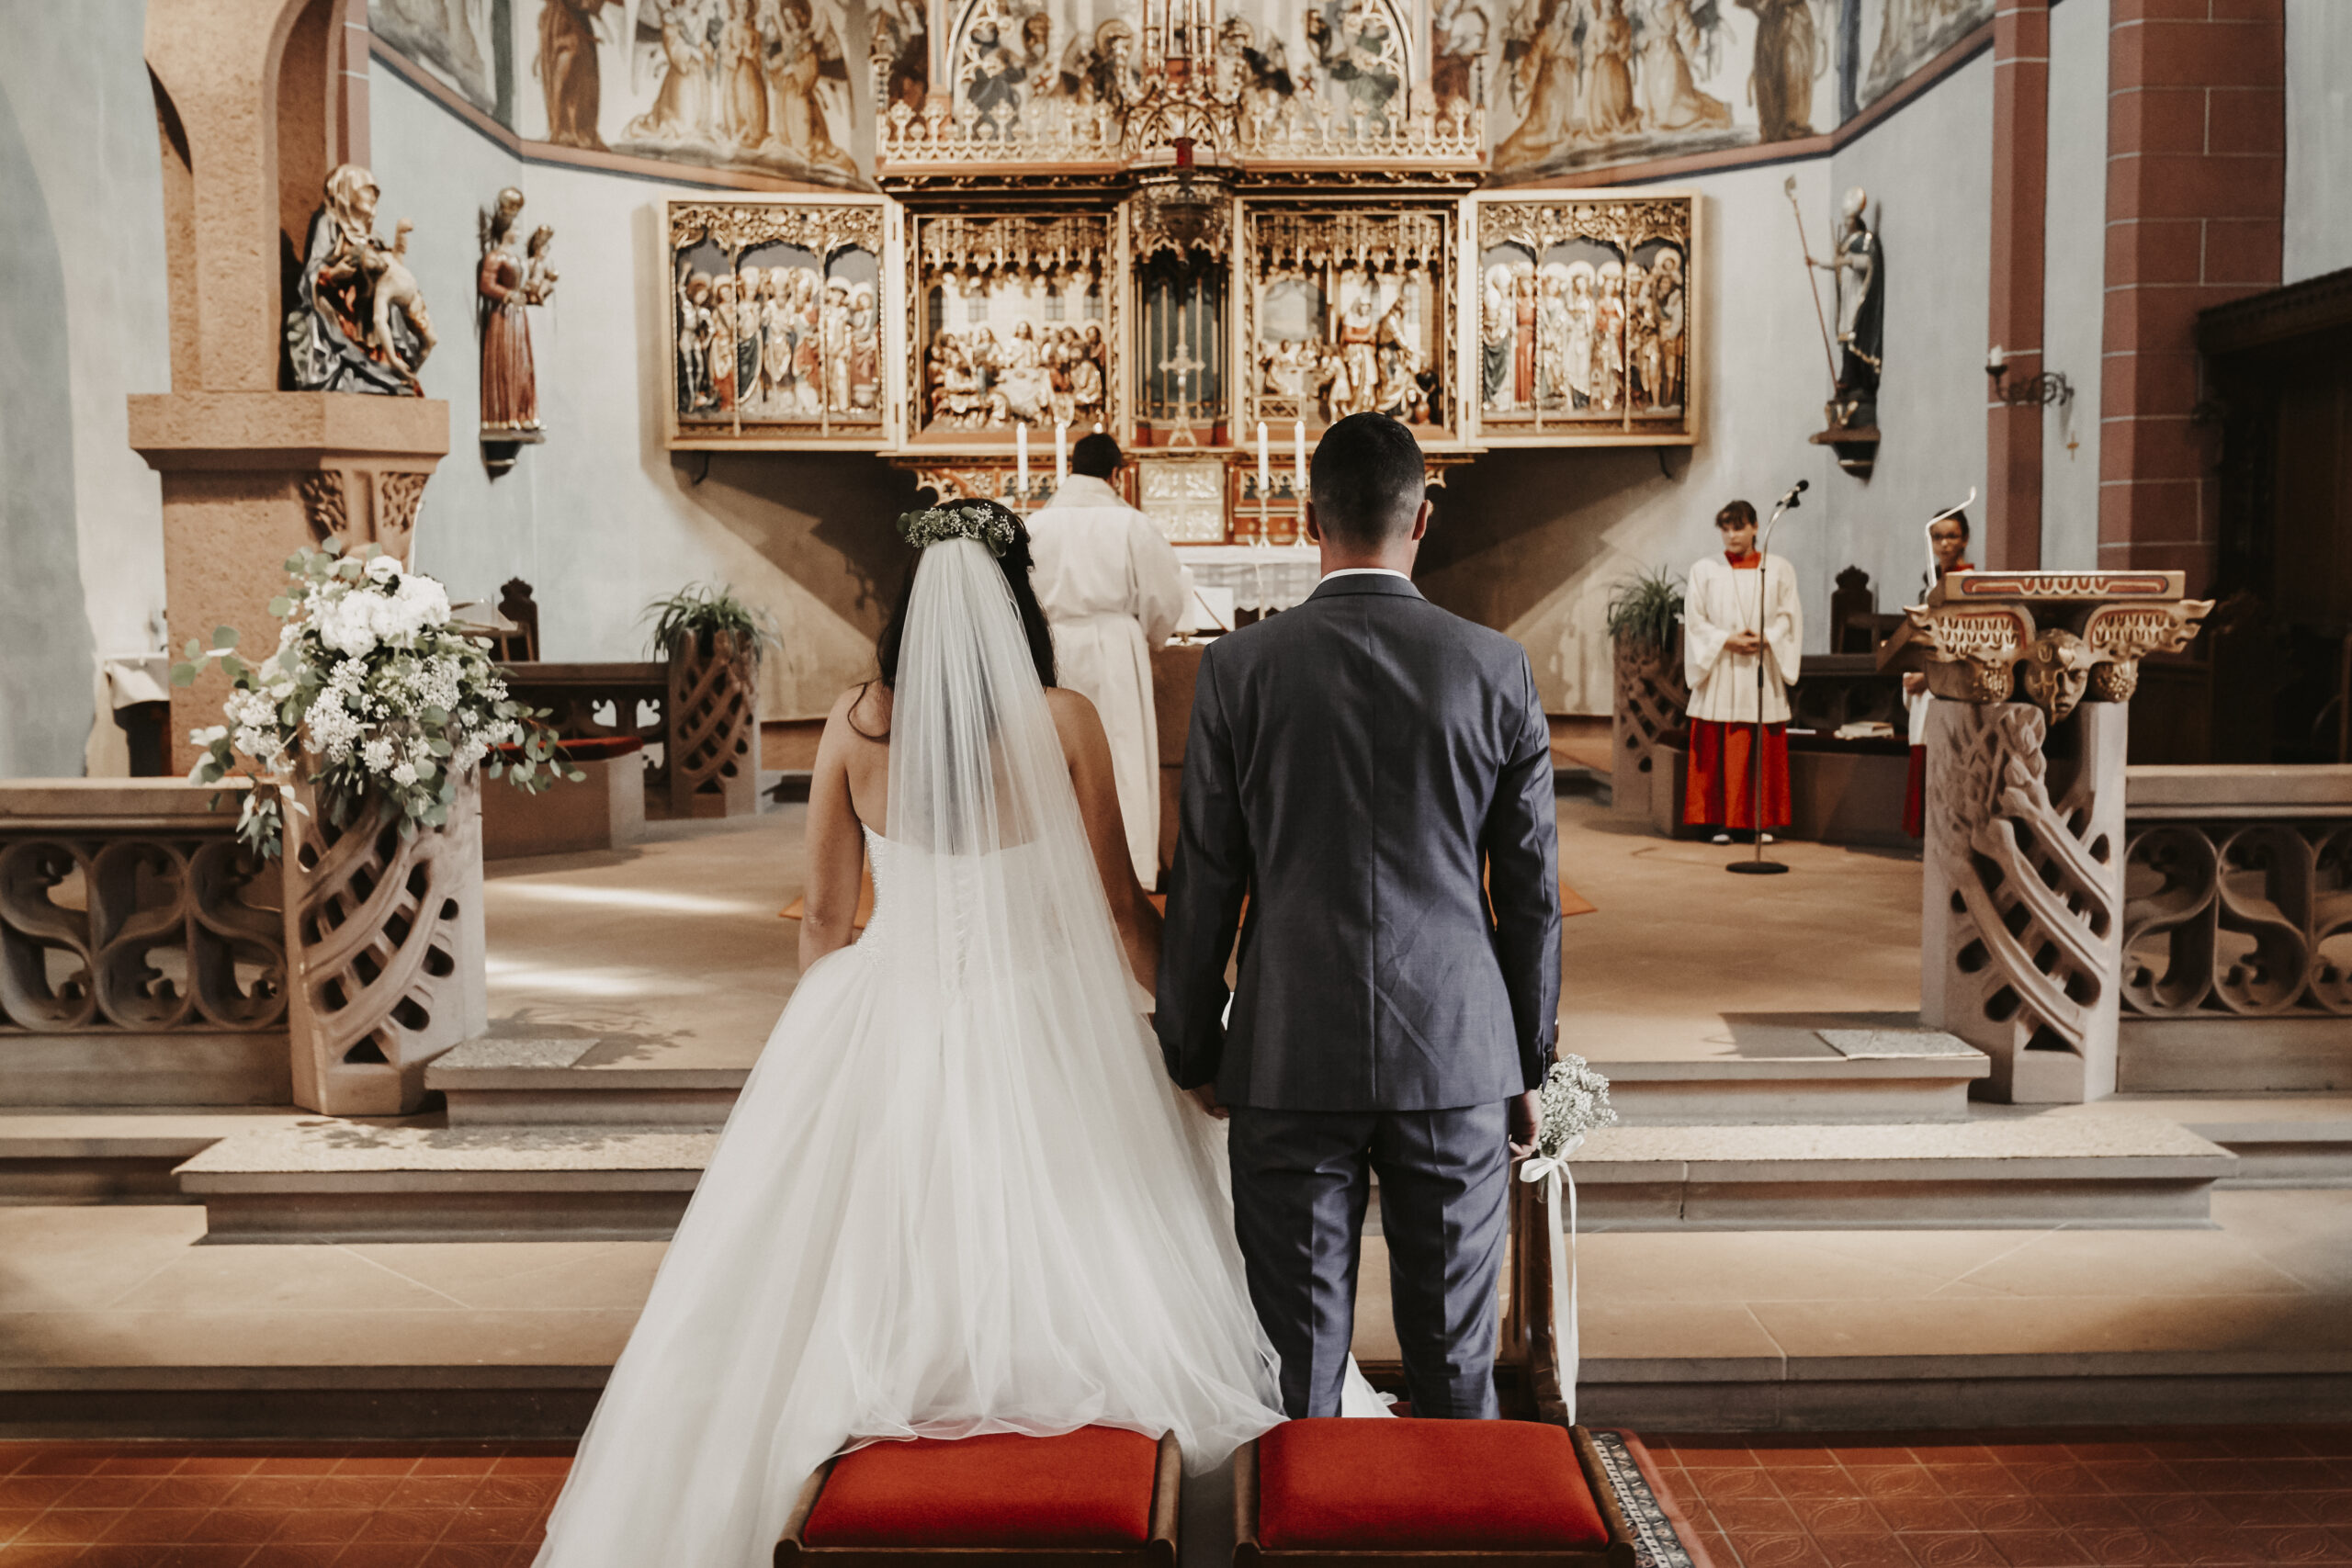 Das Brautpaar in der Kirche bei der kirchlichen Trauung in Zürich am Händchen halten und Küssen während der Eheschließung